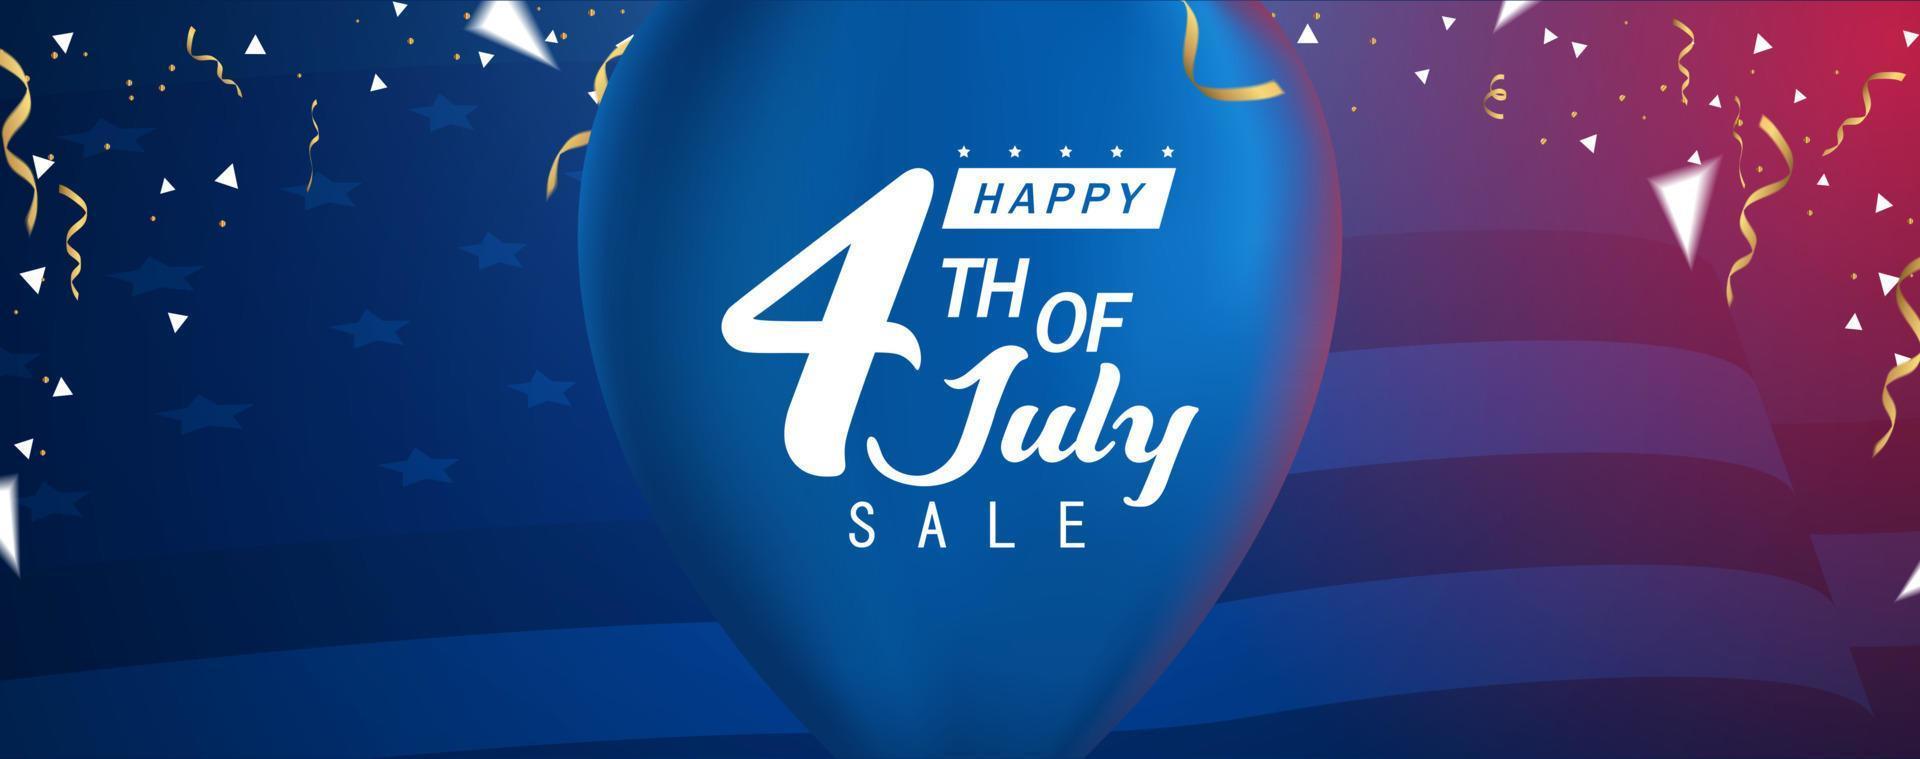 felice 4 luglio saldi, banner di vendita felice giorno indipendente vettore